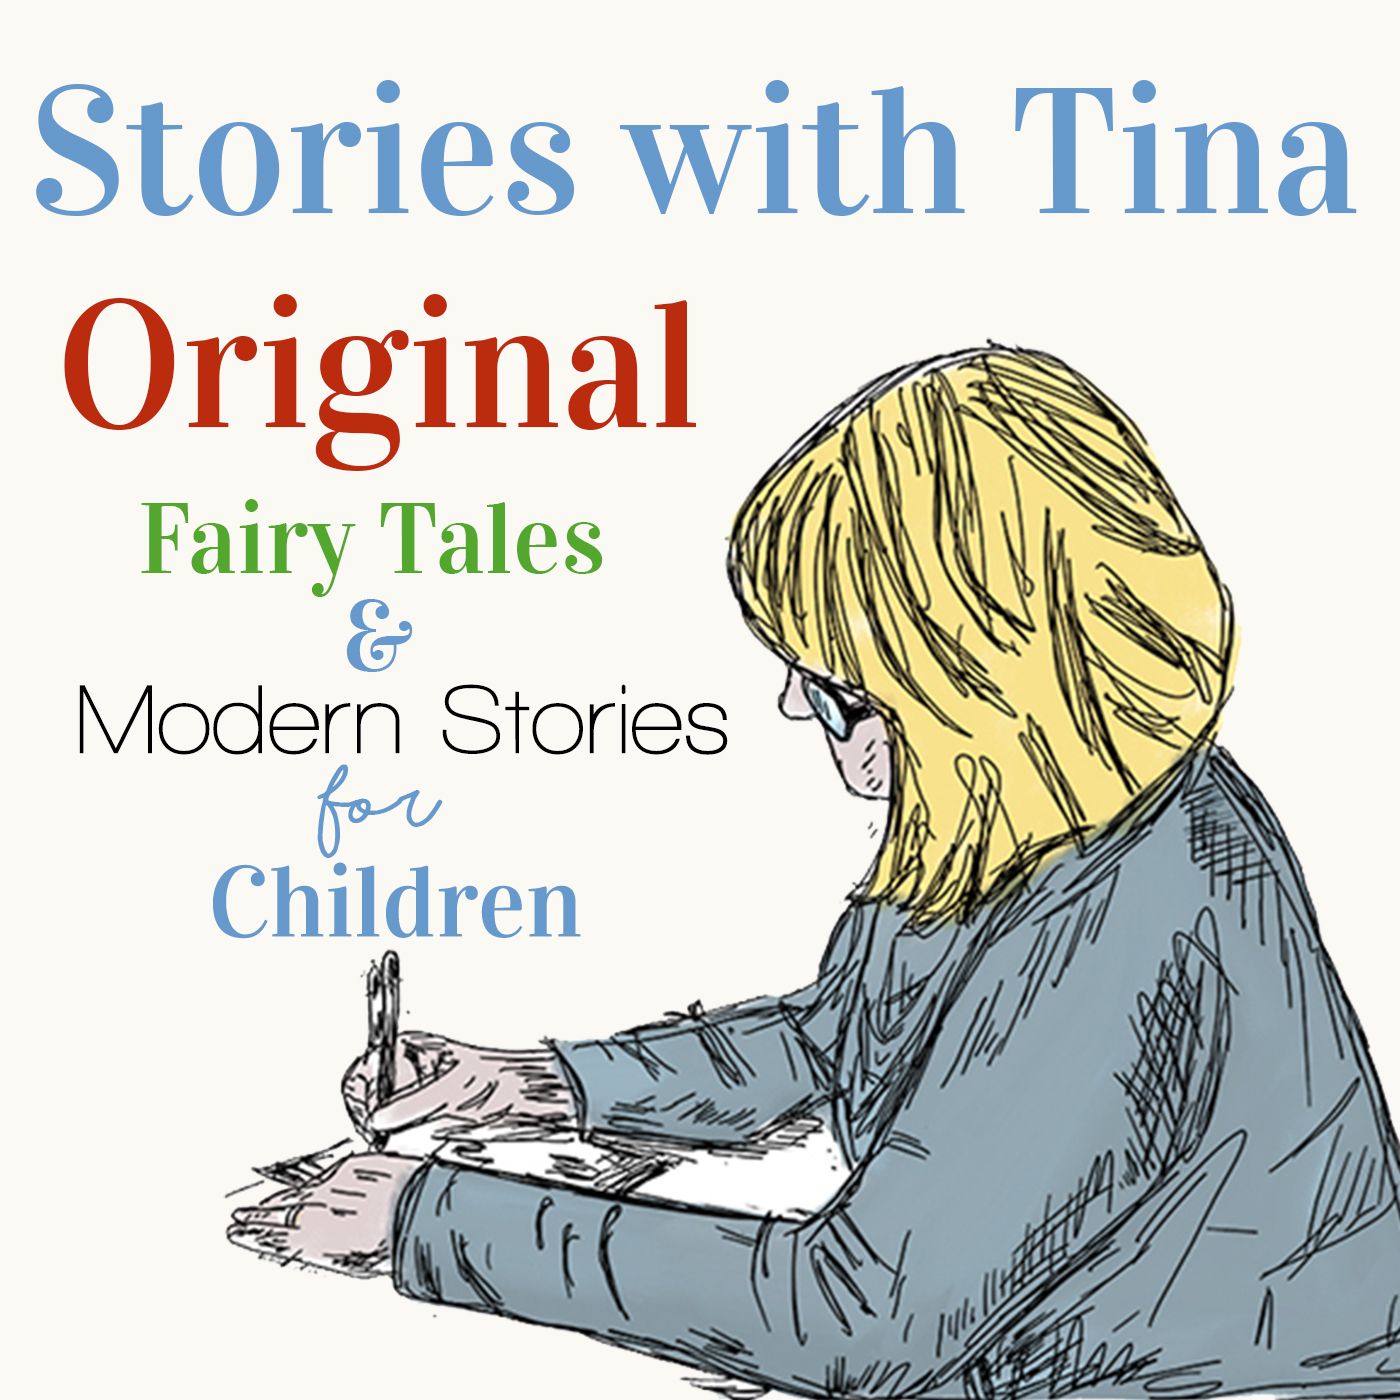 Stories with Tina